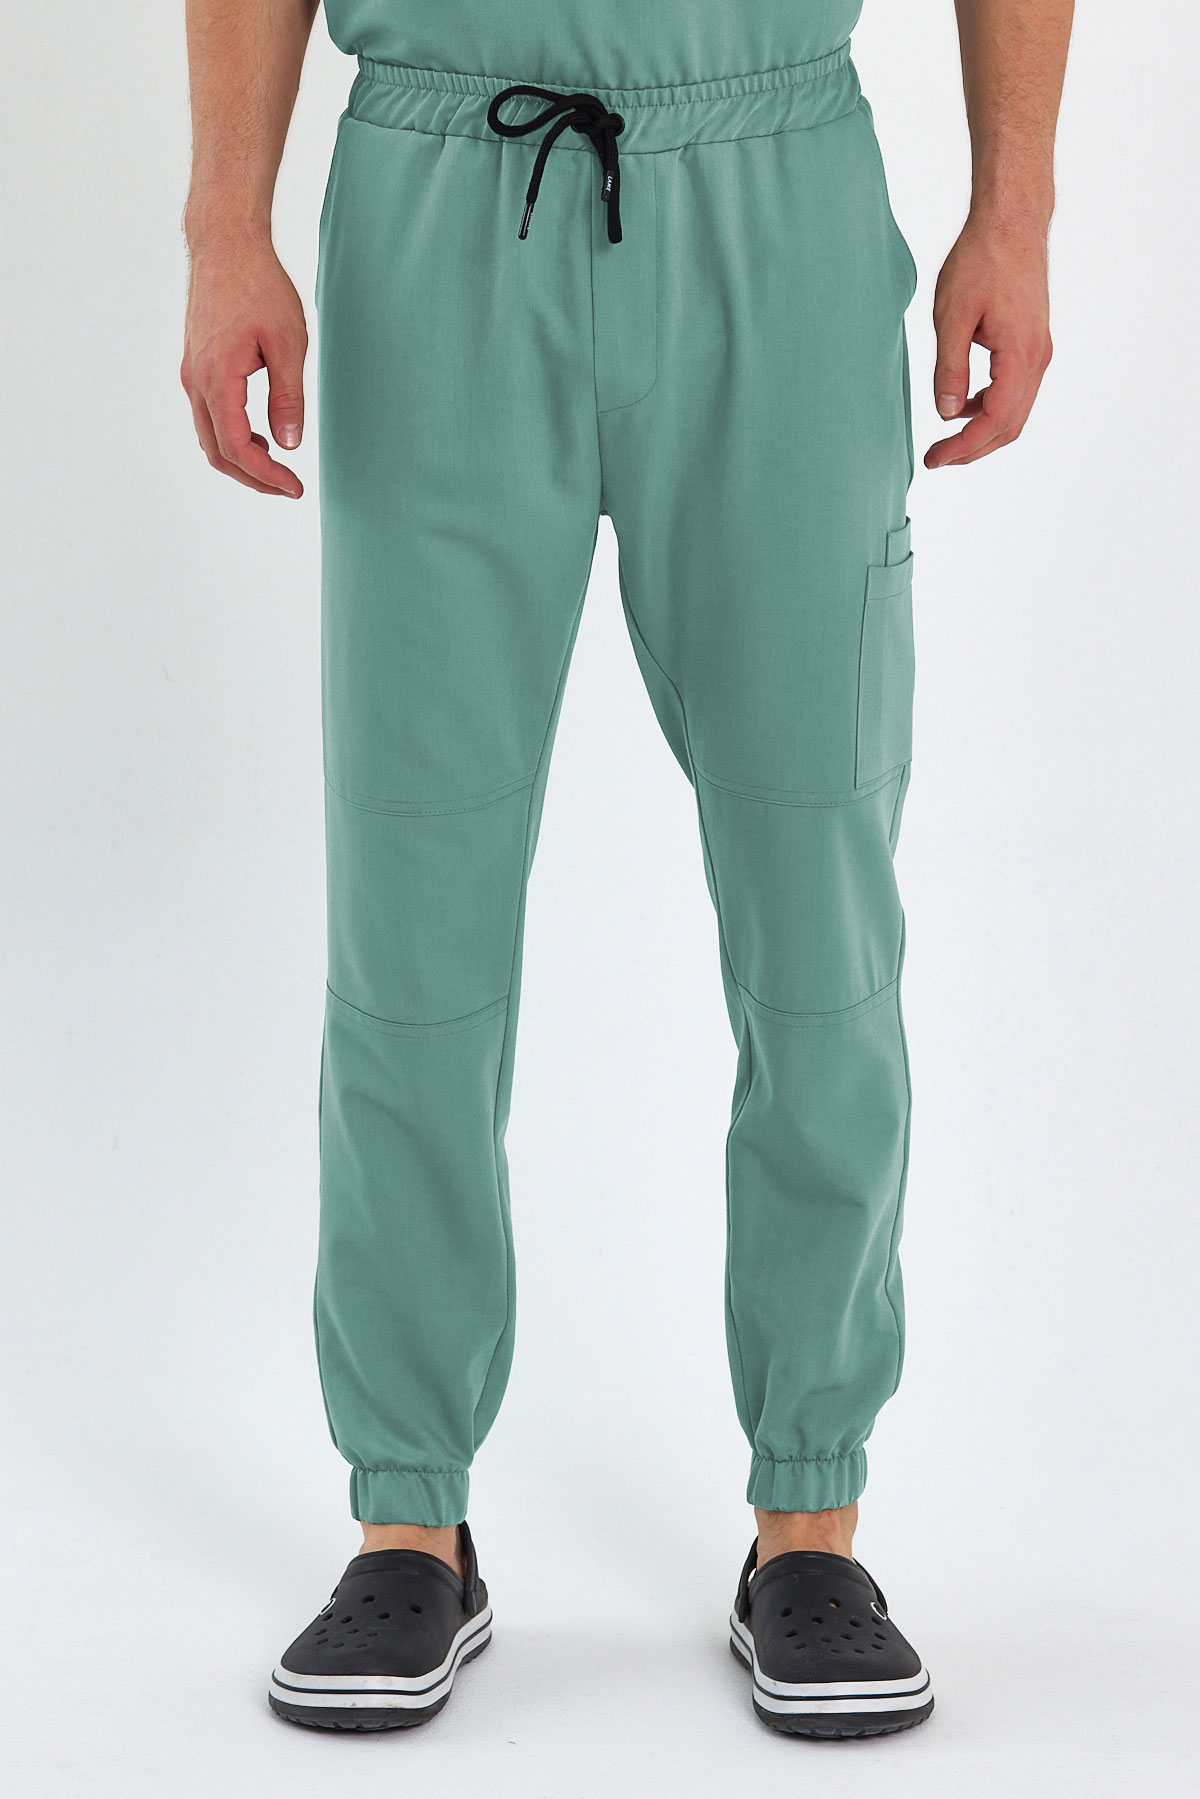 LAME 3005 Luxury Likralı Mint Yeşili Scrubs, Hemşire Forması Diz Ekli Kargo Cepli Paça Lastikli Pantolon